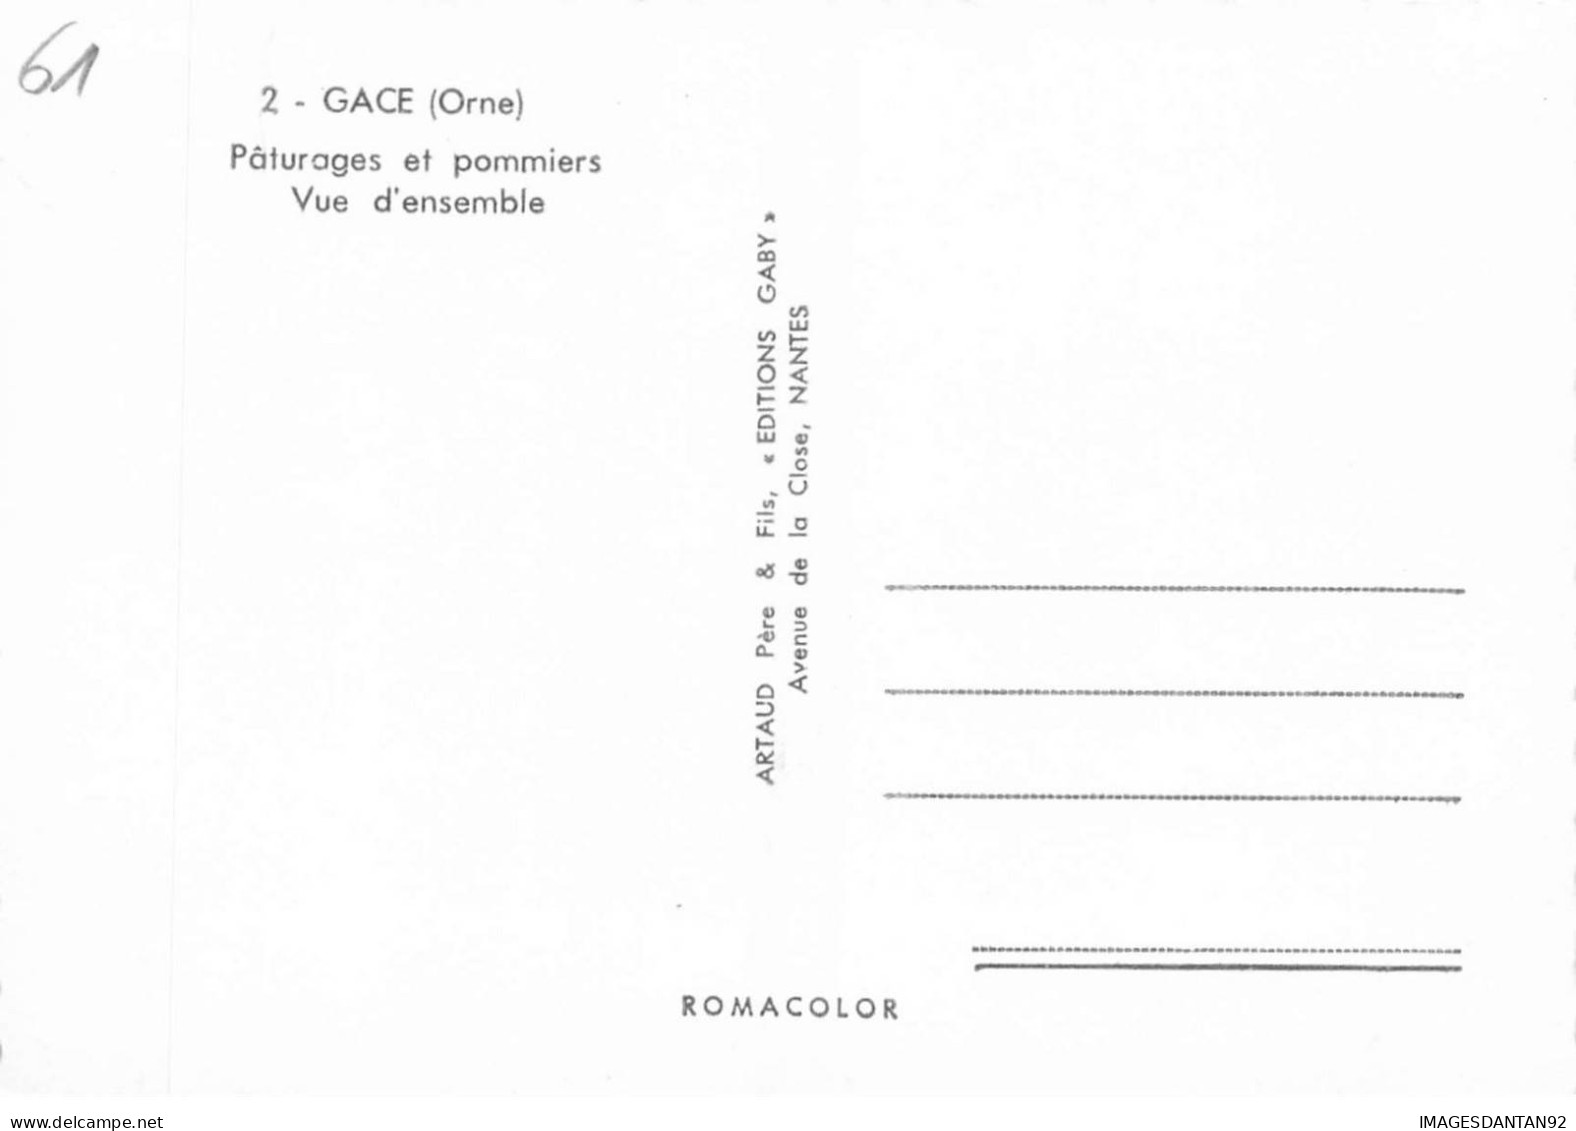 61 GACE AE#DC453 PATURAGES ET POMMIERS VUE GENERALE - Gace